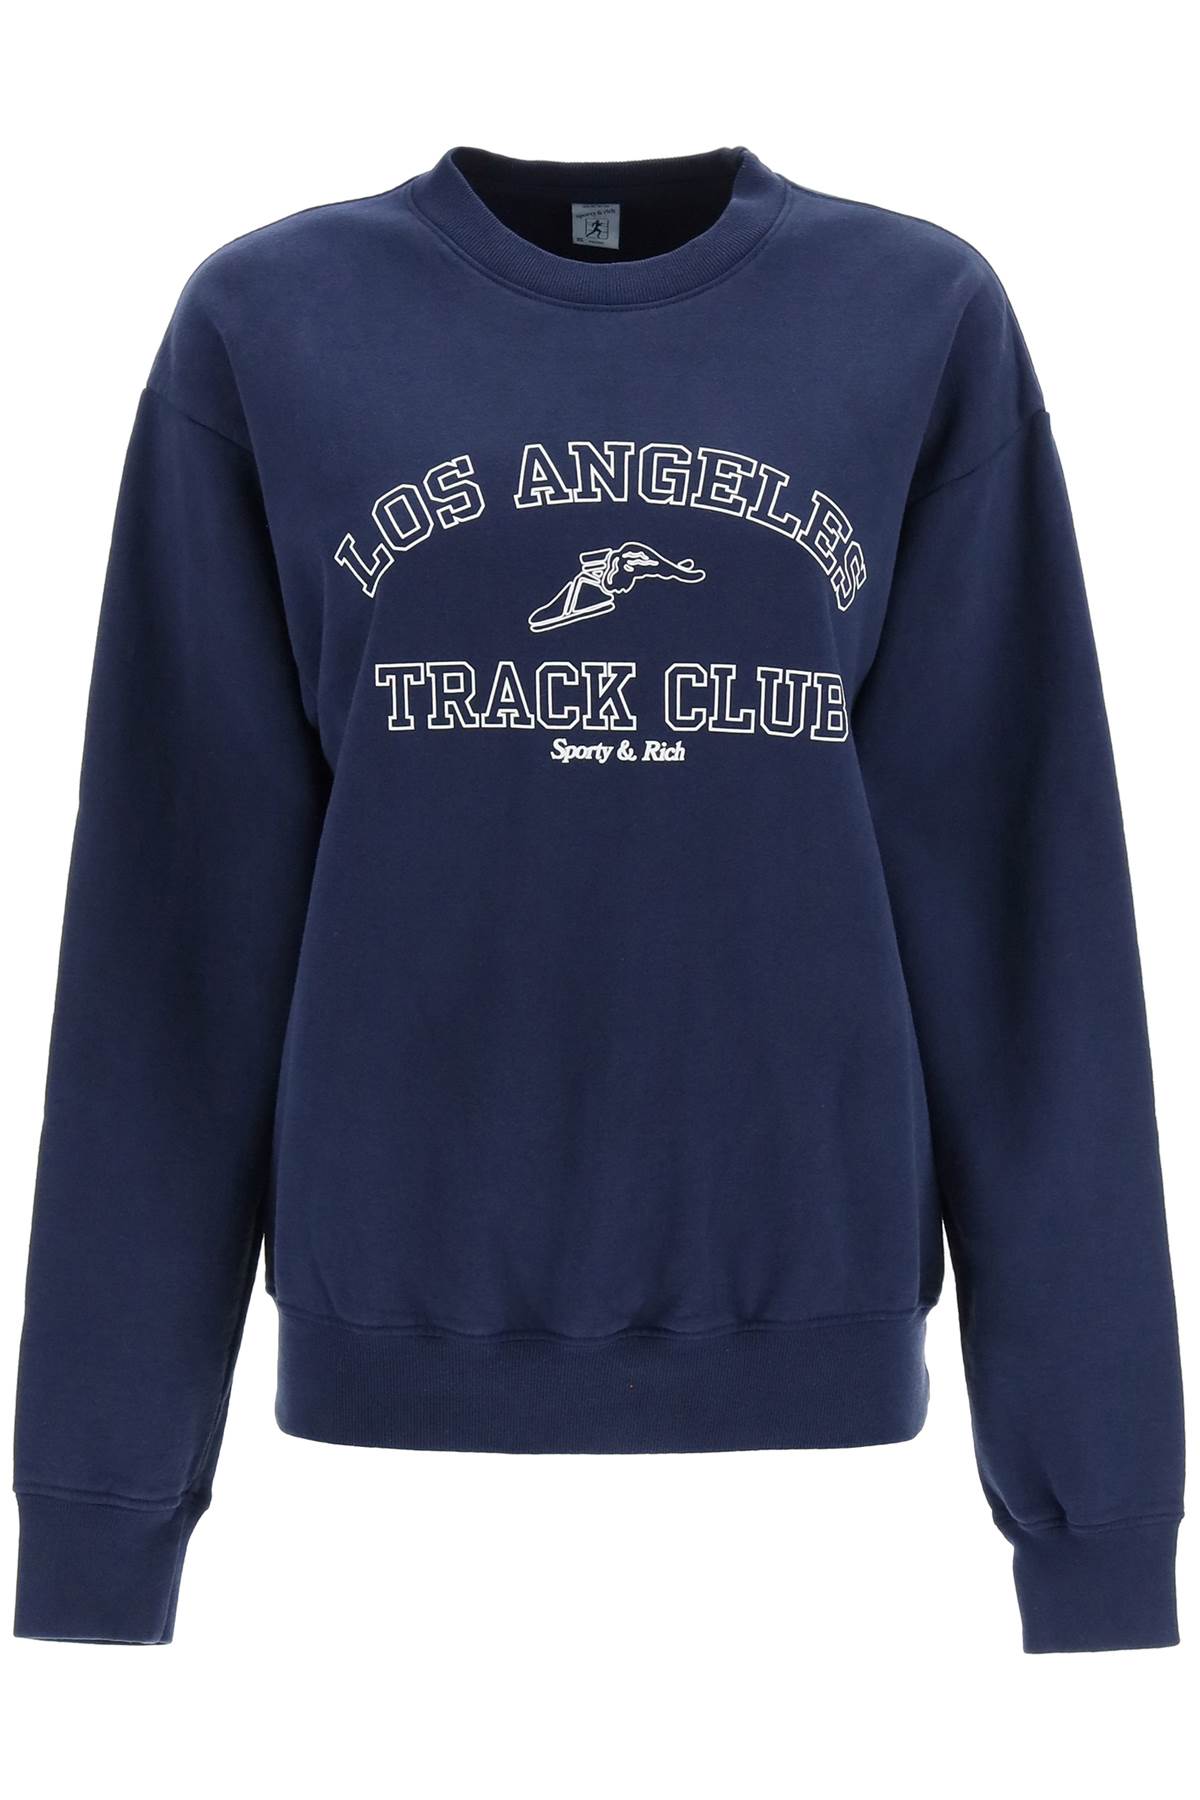 Sporty & Rich track Club Crewneck Sweatshirt